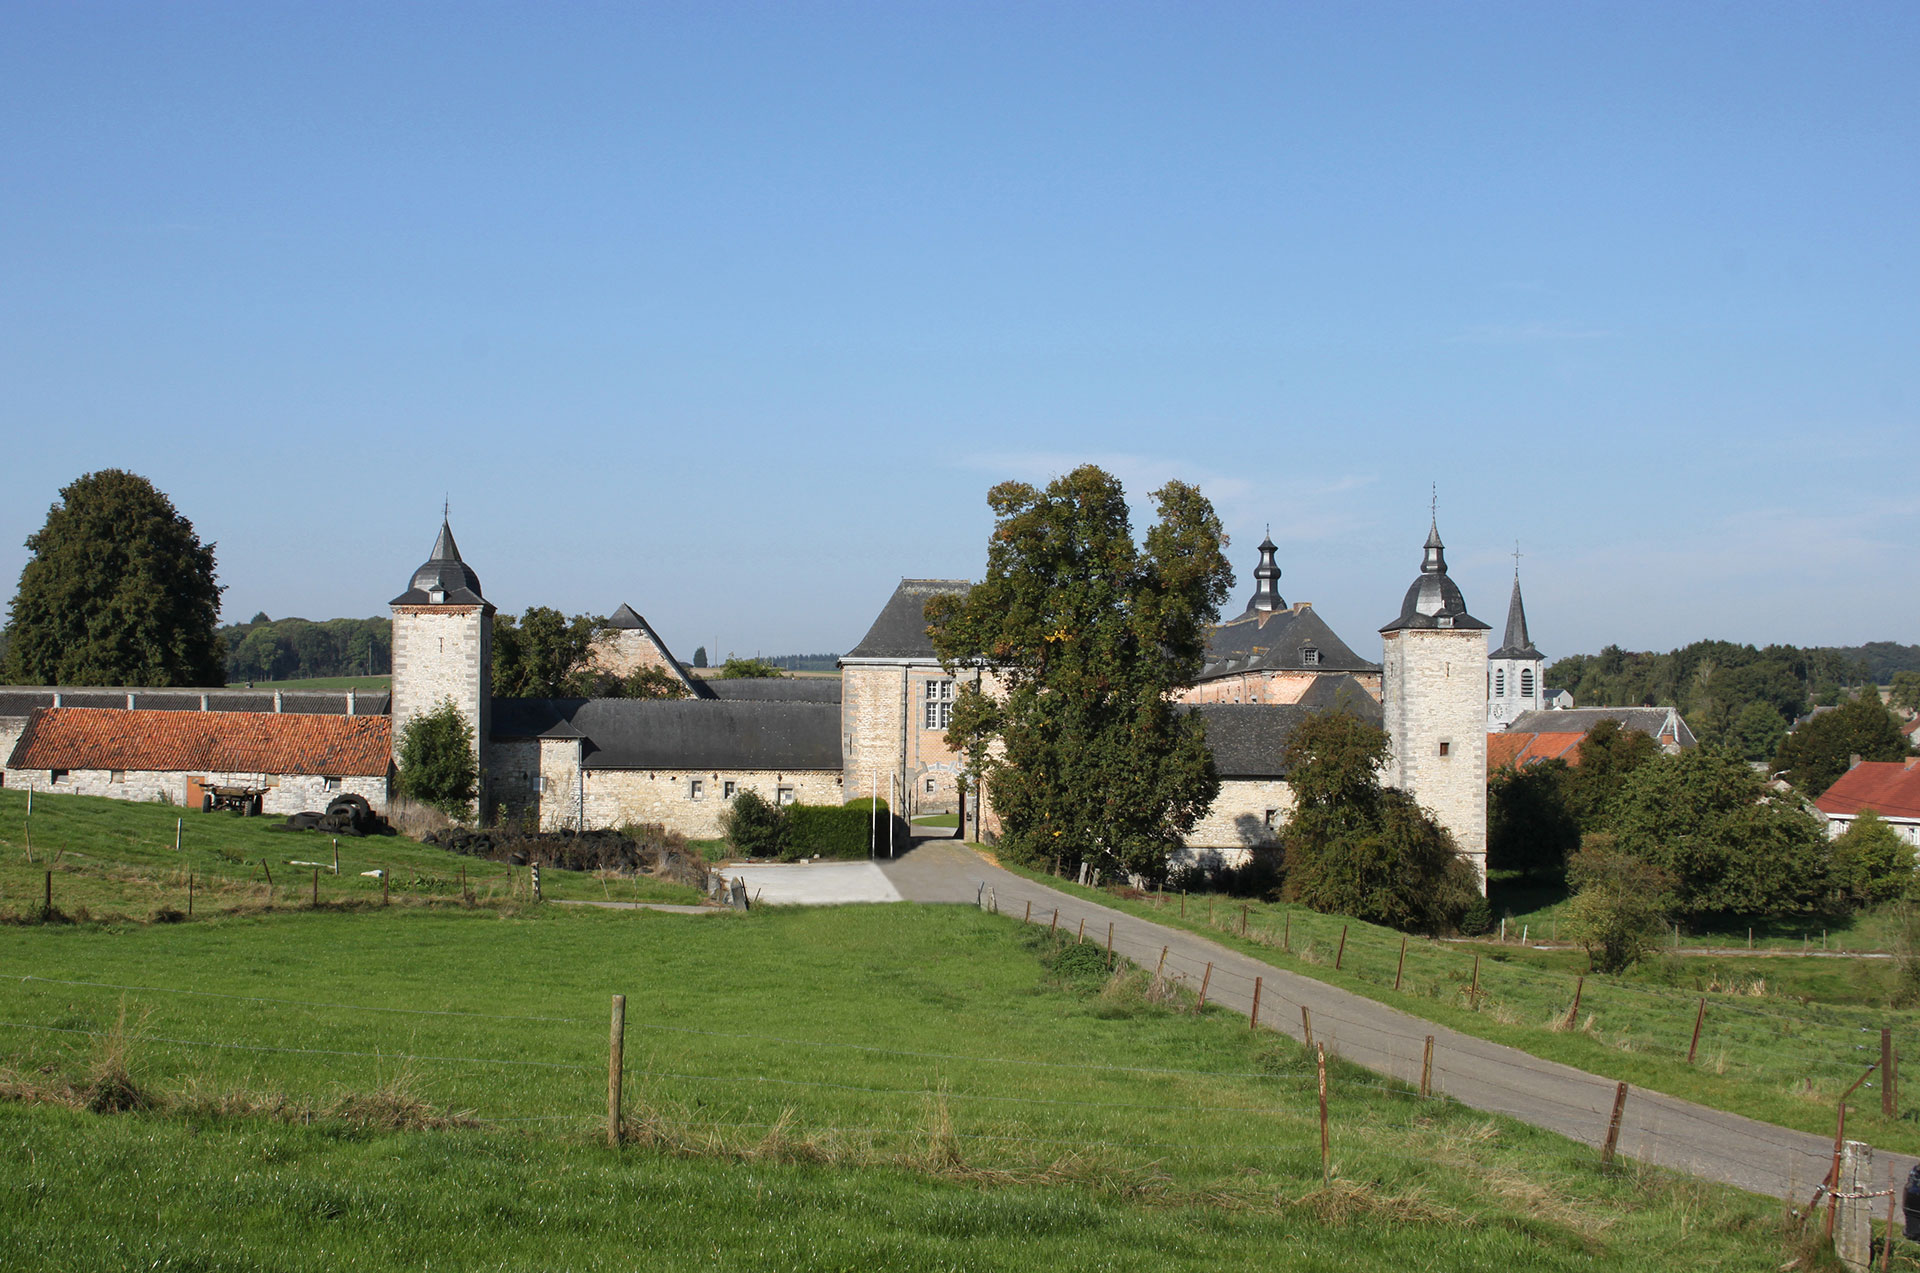 Les plus beaux villages de Wallonie - Falaën - clocher - cour intérieur - ciel bleu